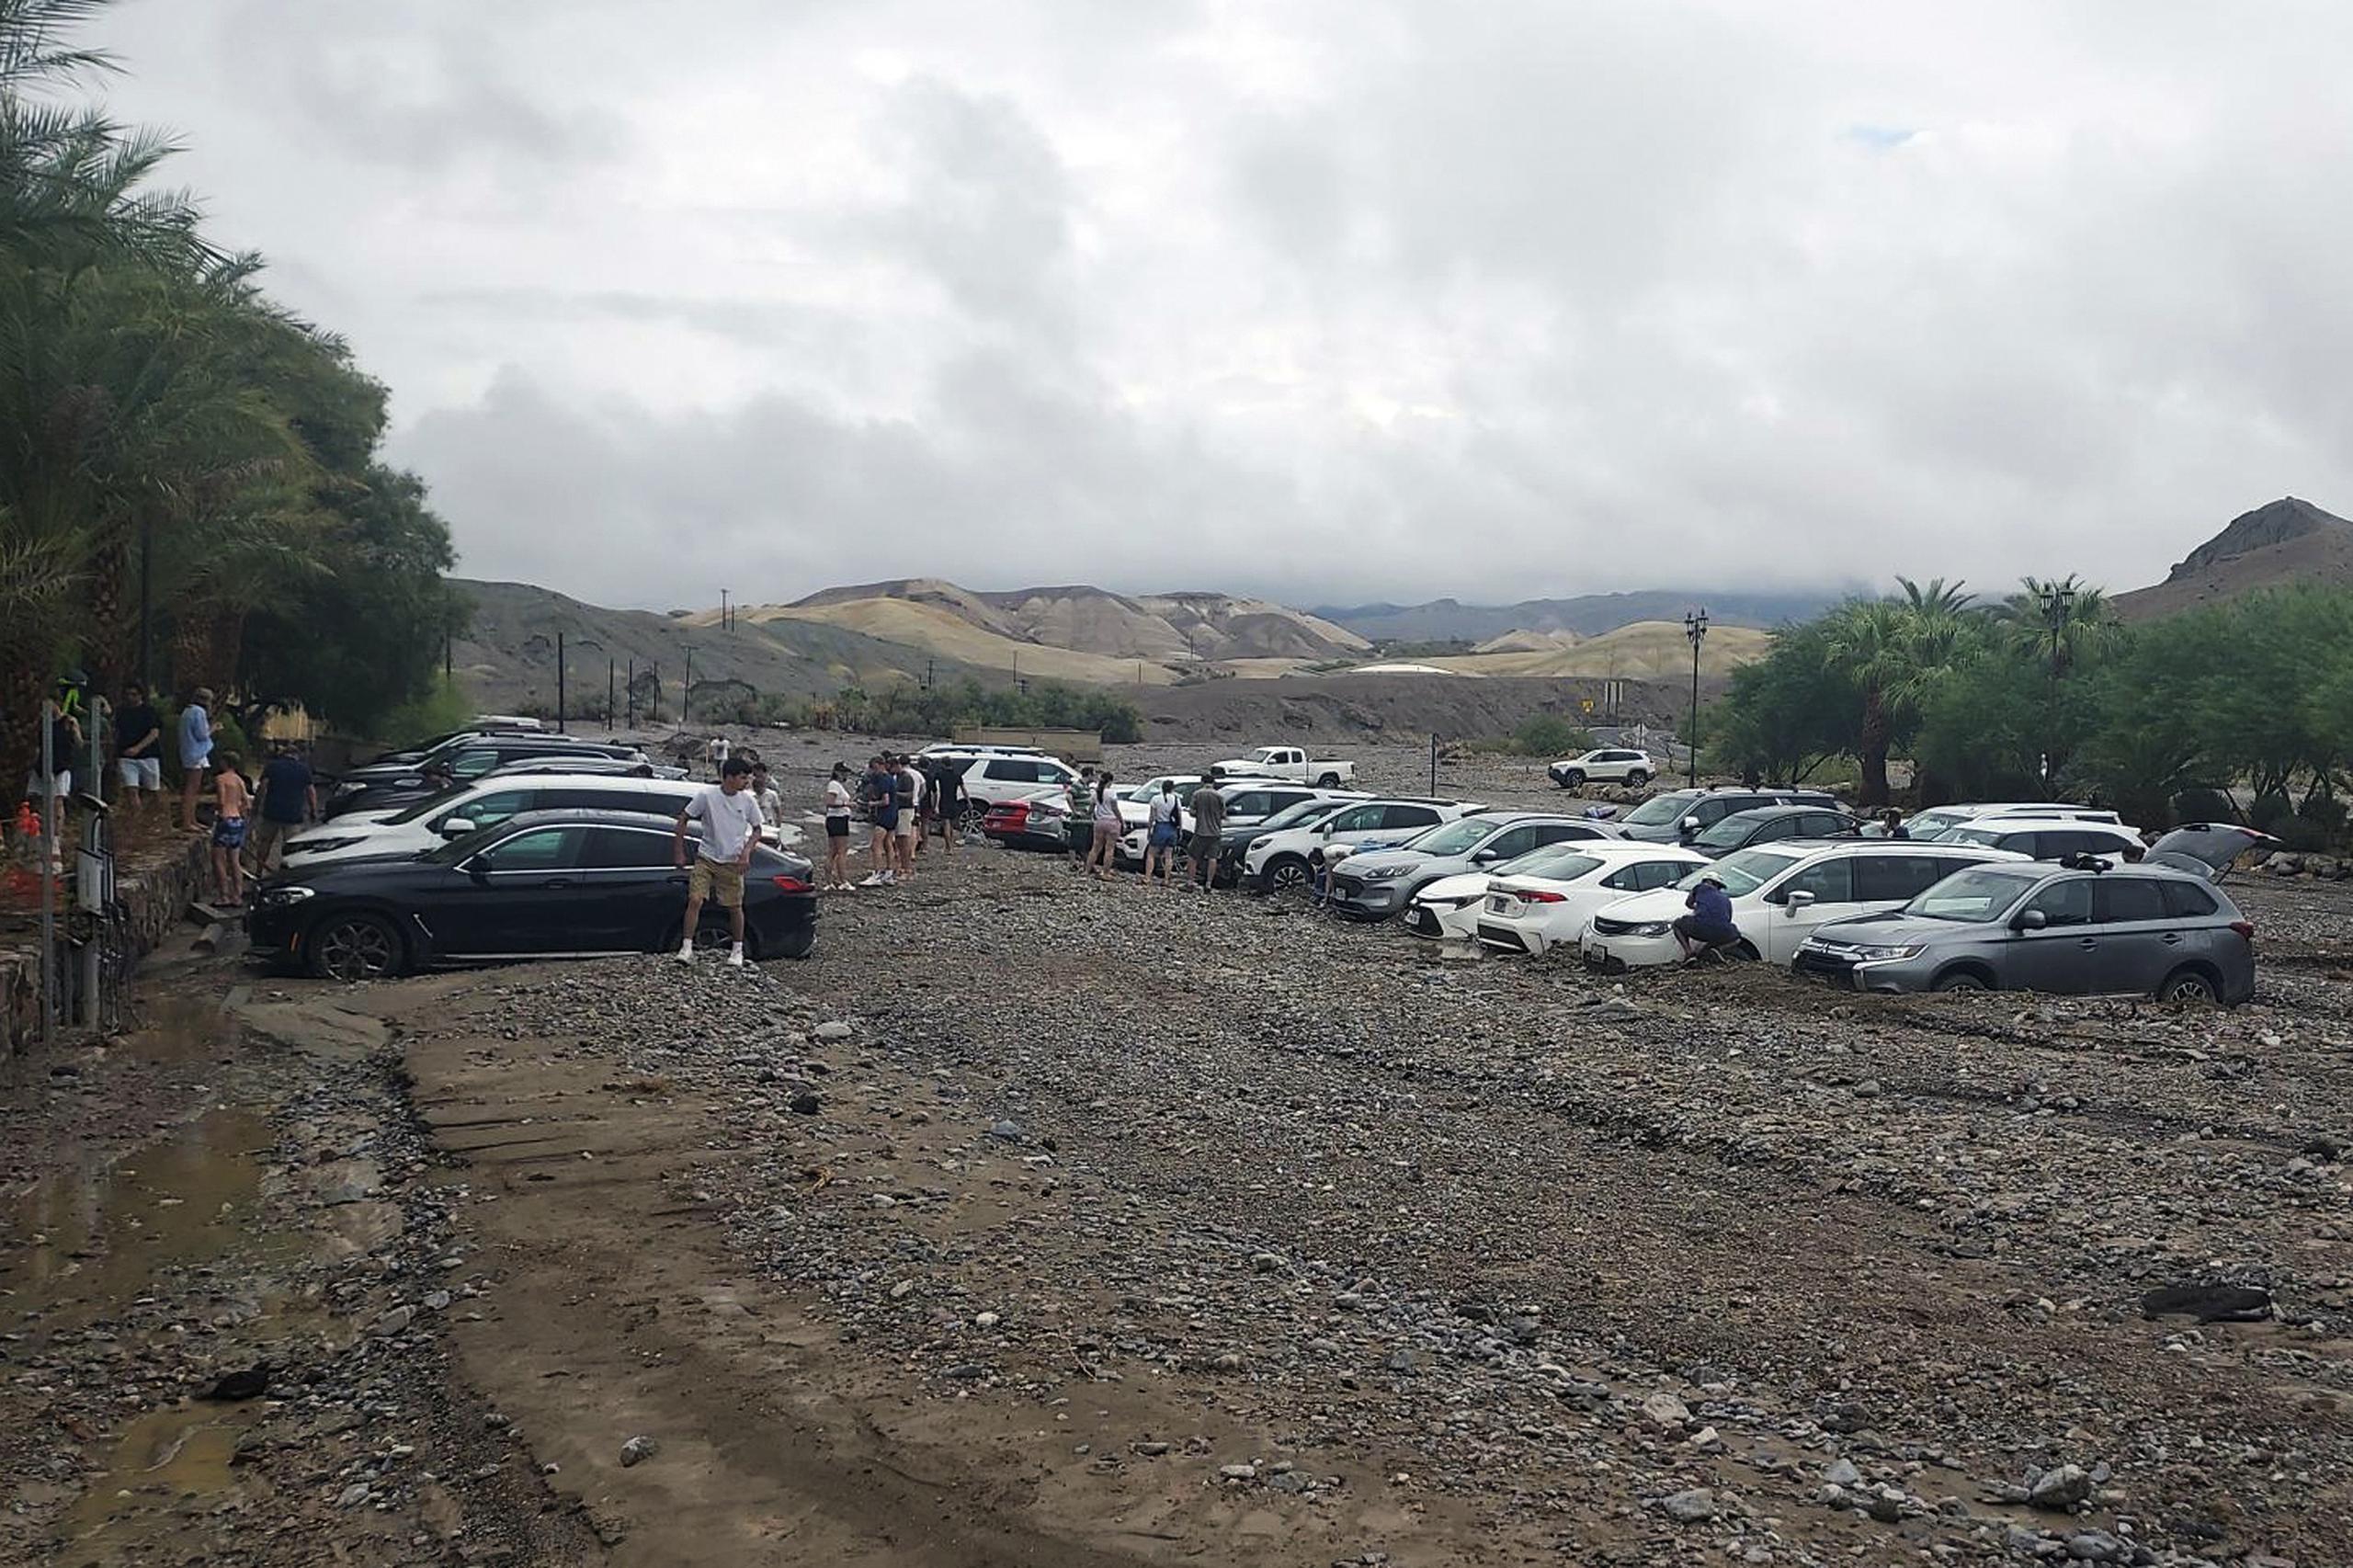 Los carros están atrapados en el fango y los escombros de las inundaciones repentinas en The Inn at Death Valley en el Parque Nacional Death Valley, California, el viernes 5 de agosto de 2022.